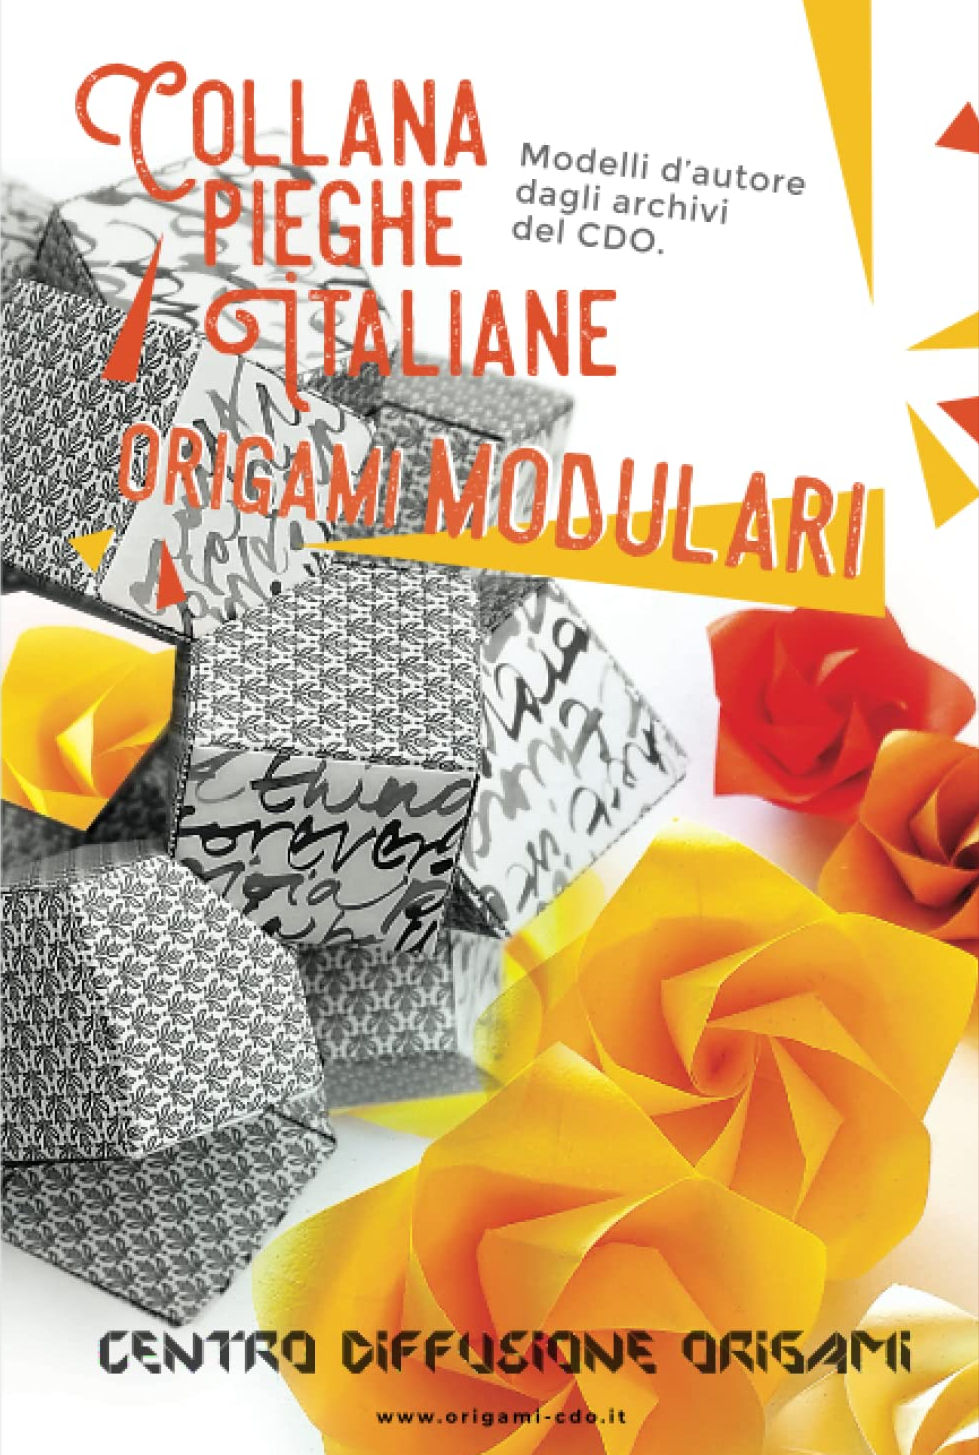 Collana pieghe Italiane - origami MODULARI : page 130.